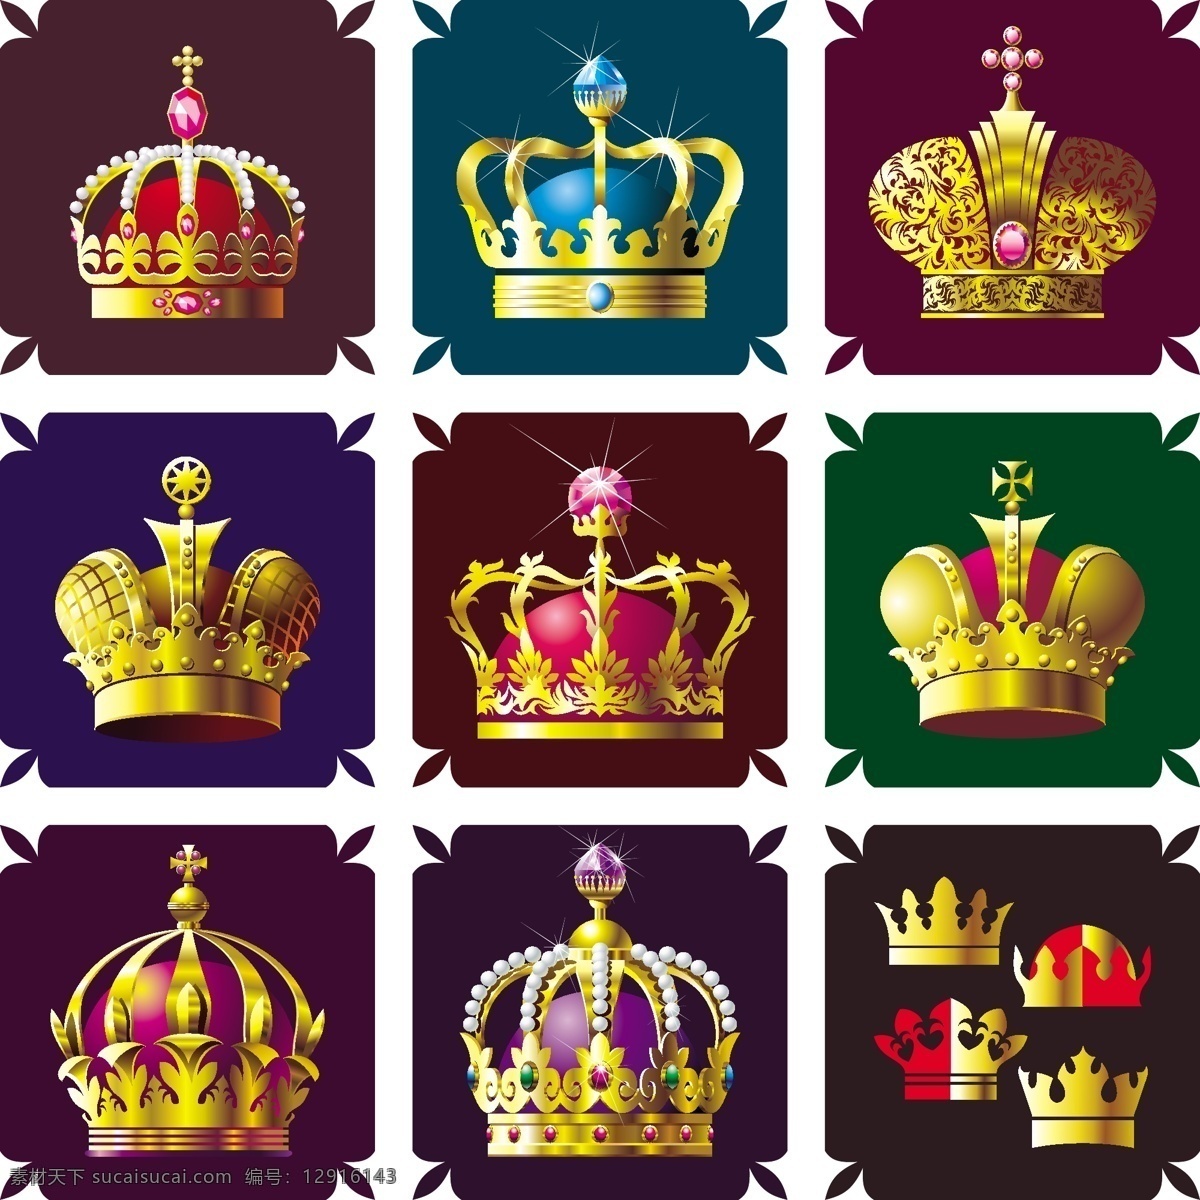 皇冠 帽子 高贵的头冠 高贵 权利的象征 其他设计 矢量